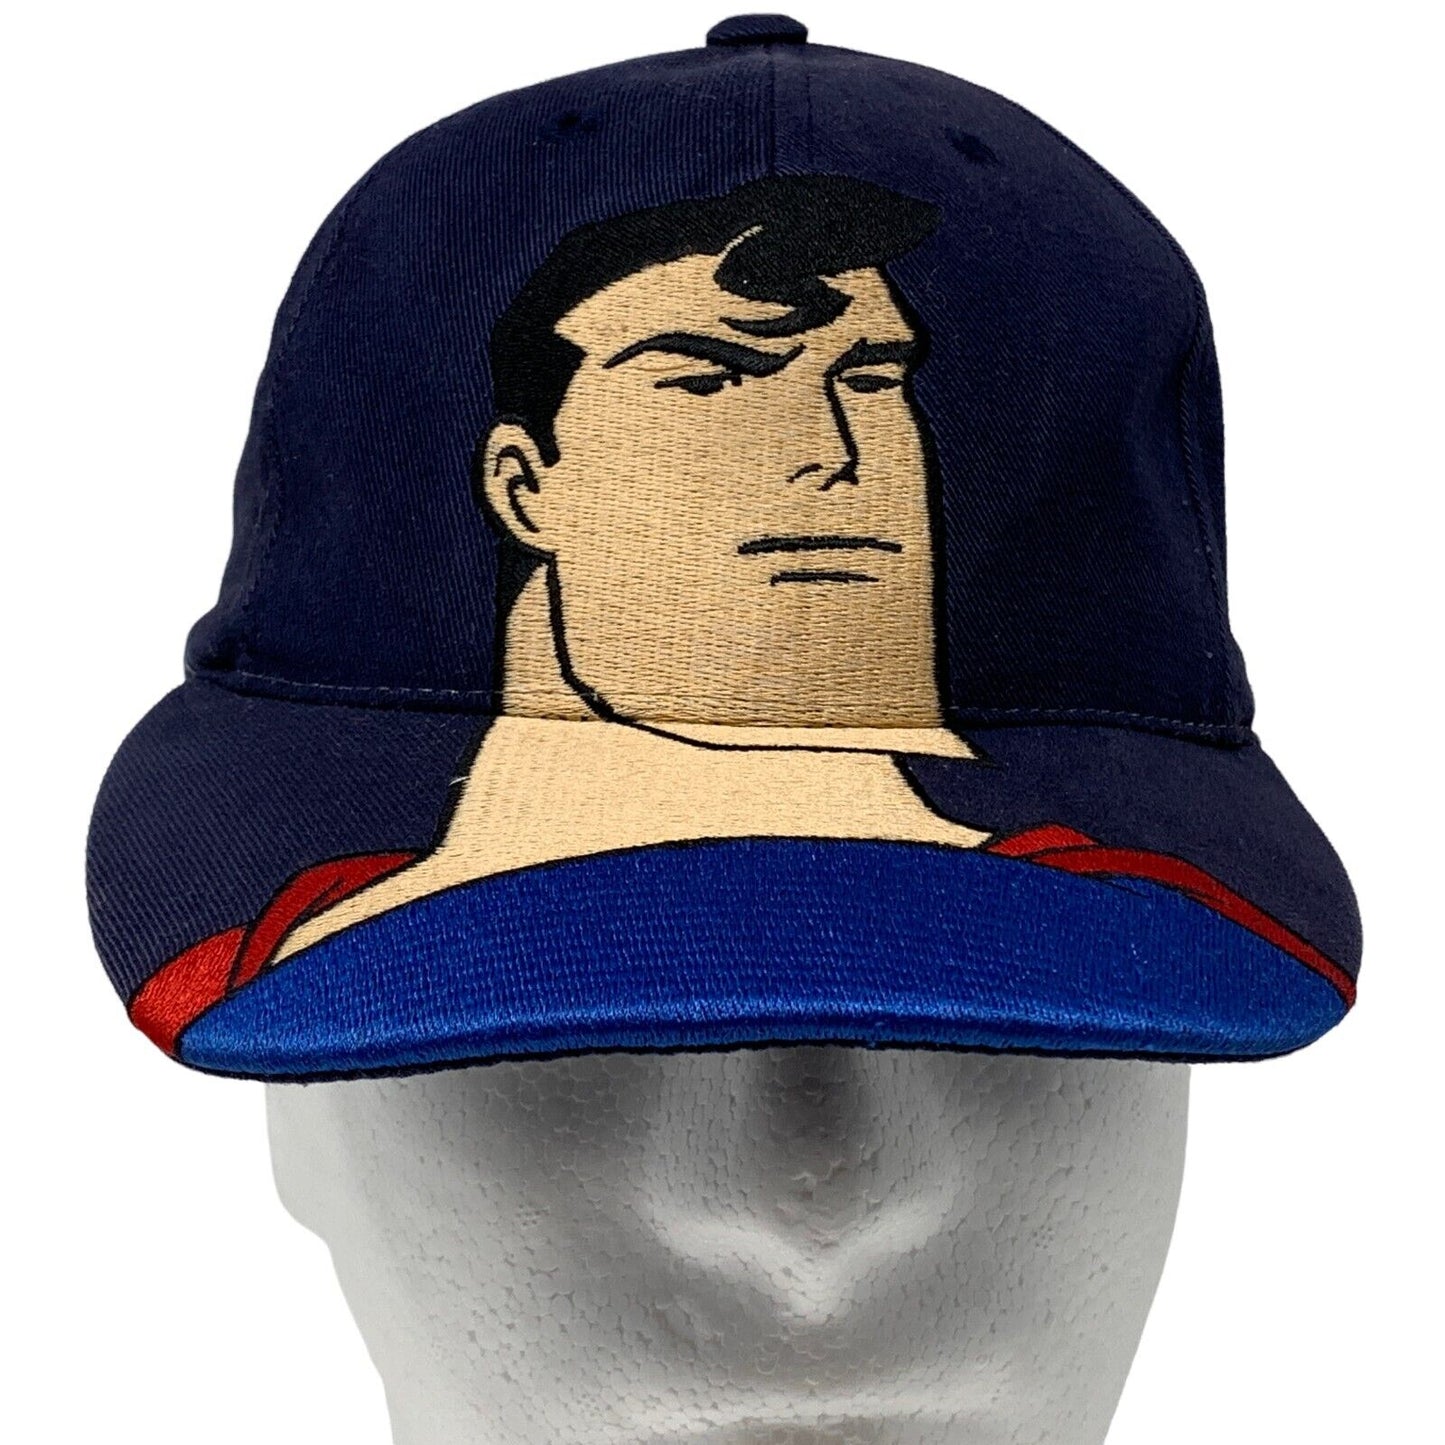 超人动画系列复古 90 年代青年帽子 DC 漫画蓝色棒球帽